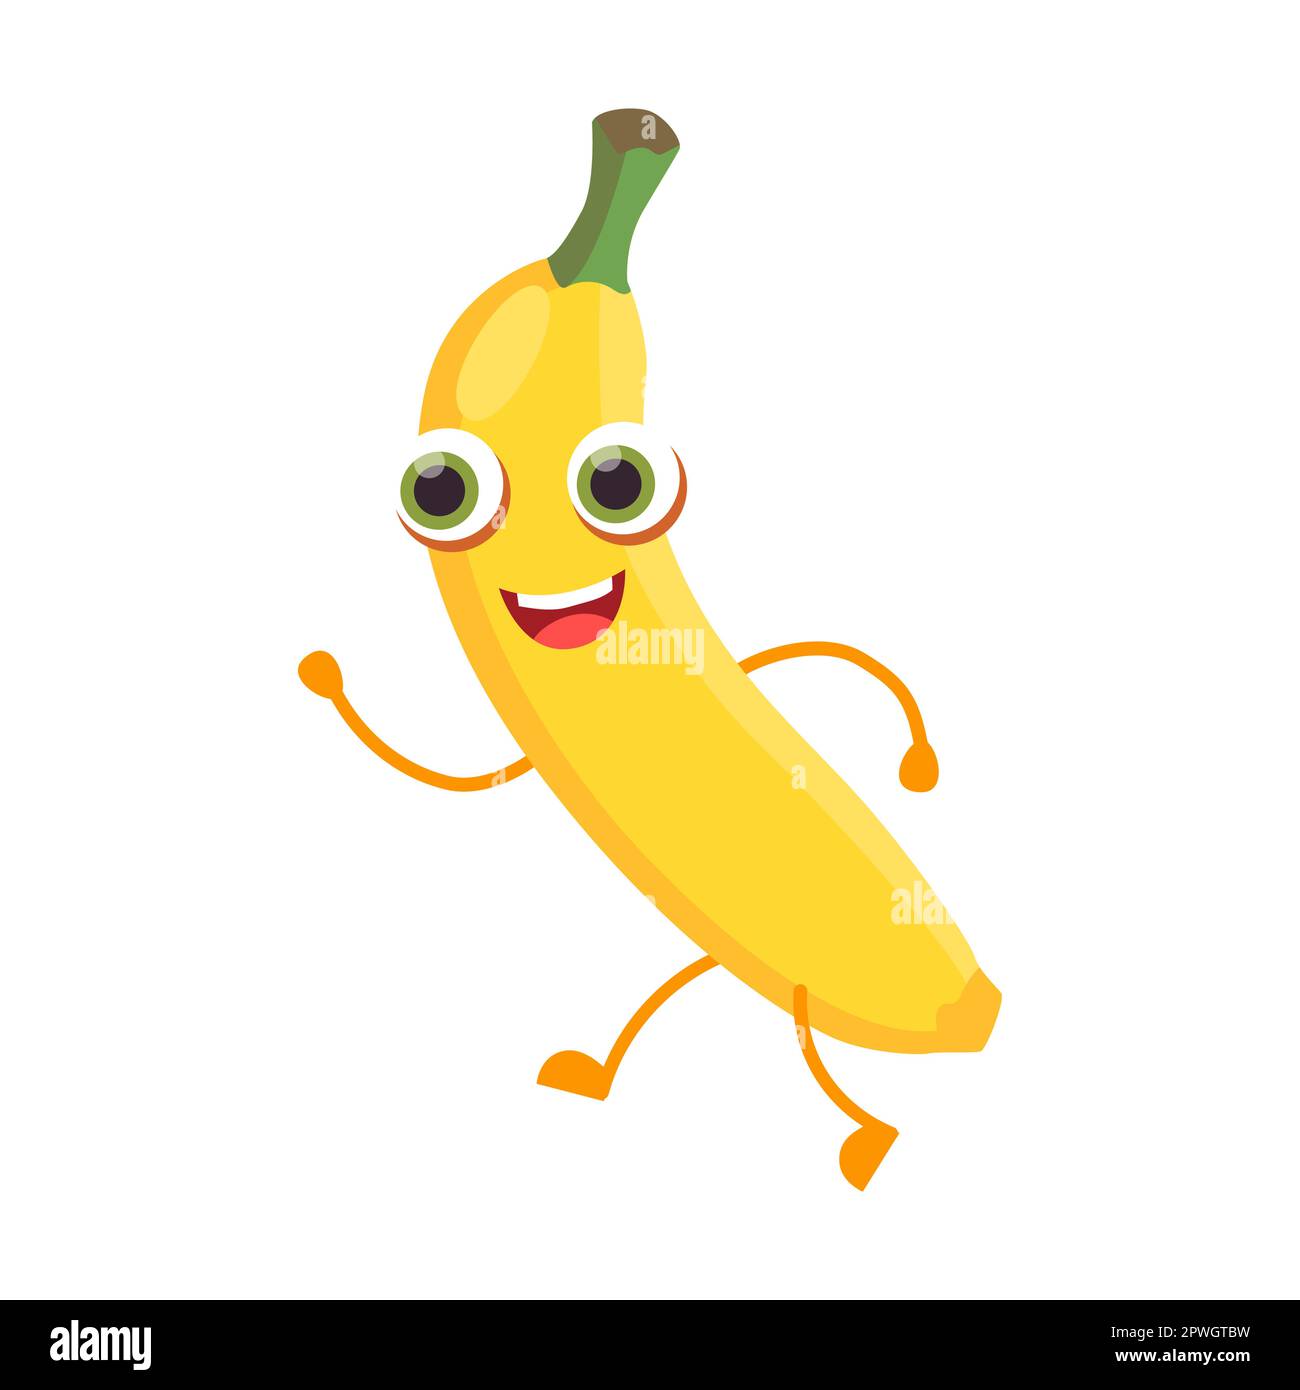 Illustration vectorielle de personnage de dessin animé « banane fruit » mignon. Autocollant comique avec caricature drôle de personnage heureux isolé sur blanc Illustration de Vecteur